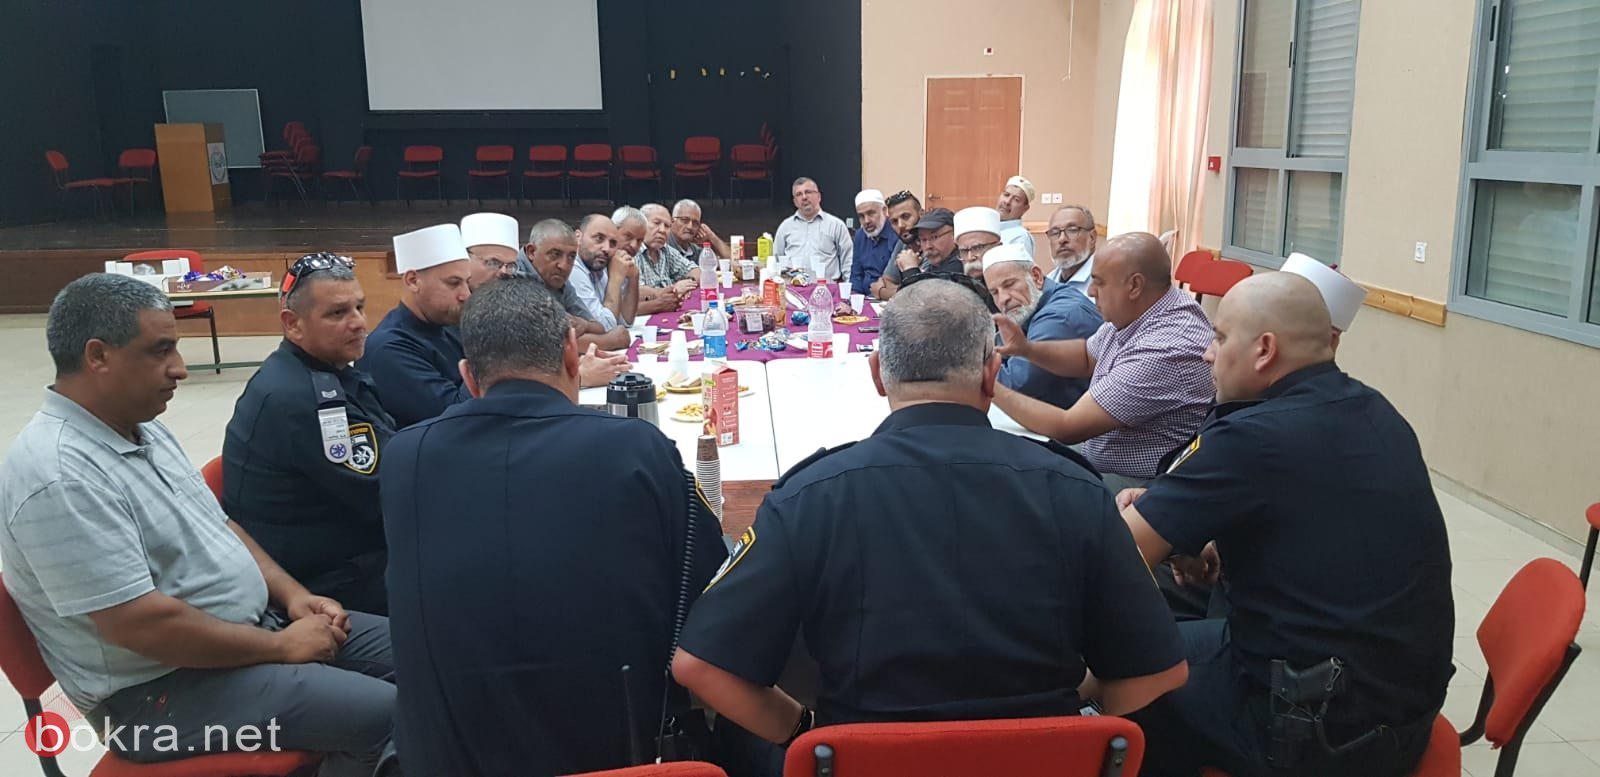 الشرطة تعقد لقاء حوار وعمل مع رجال دين قادة في منطقة طبريا-3